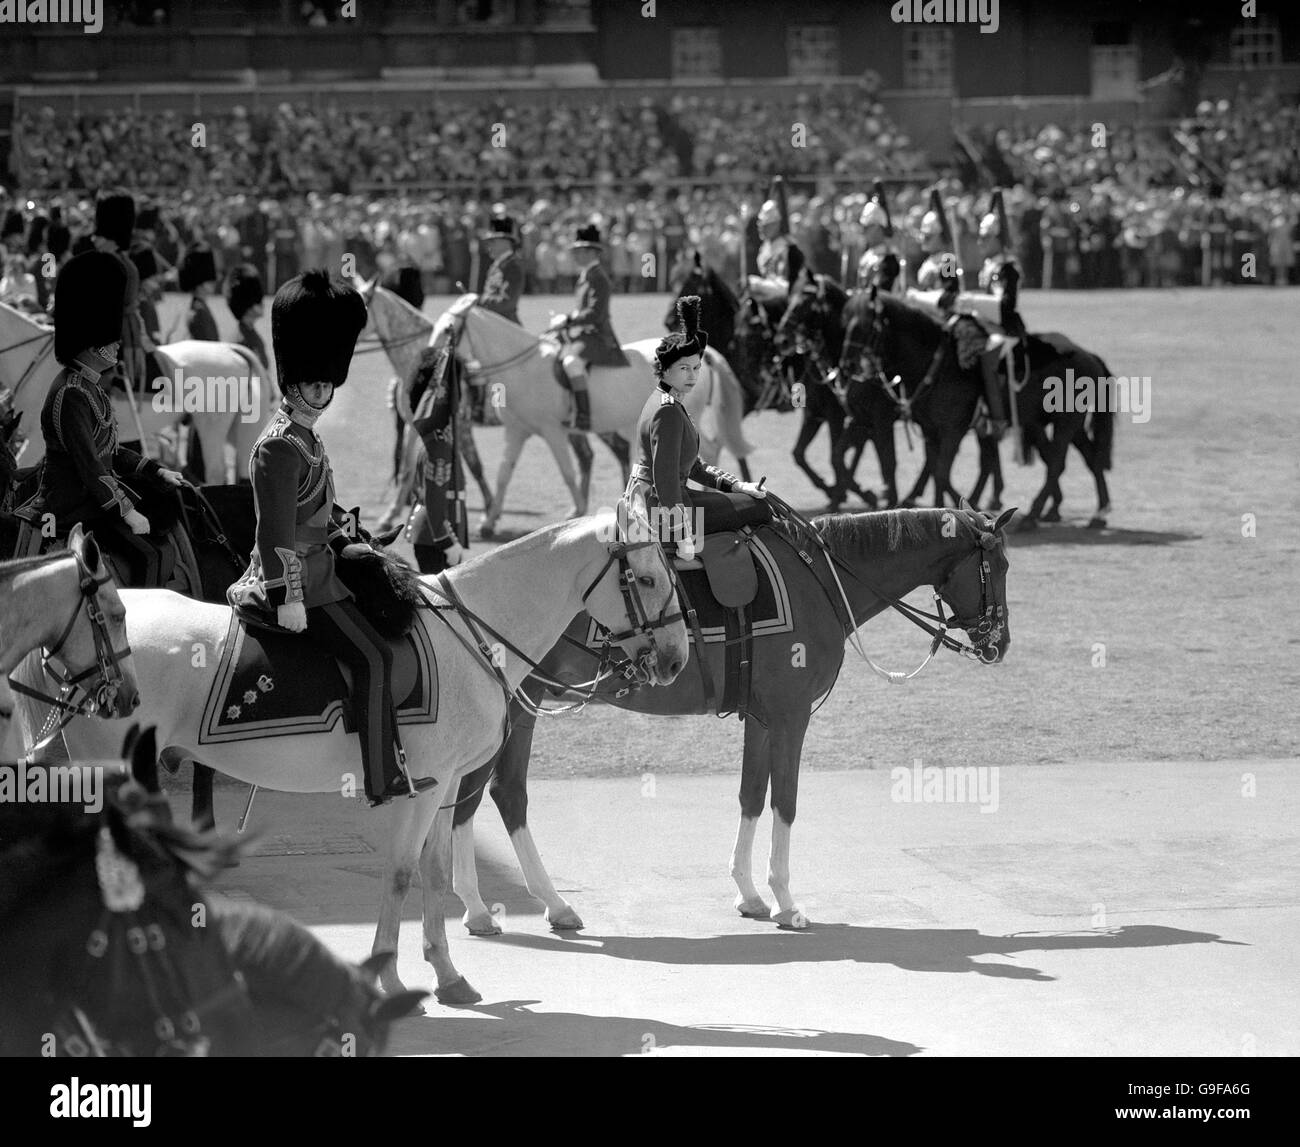 Le regard de la reine Elizabeth II et du duc d'Édimbourg (à cheval gris) à la cérémonie de Trooping la couleur en l'honneur de l'anniversaire officiel de la reine à l'occasion de la parade des gardes à cheval, Londres. Banque D'Images